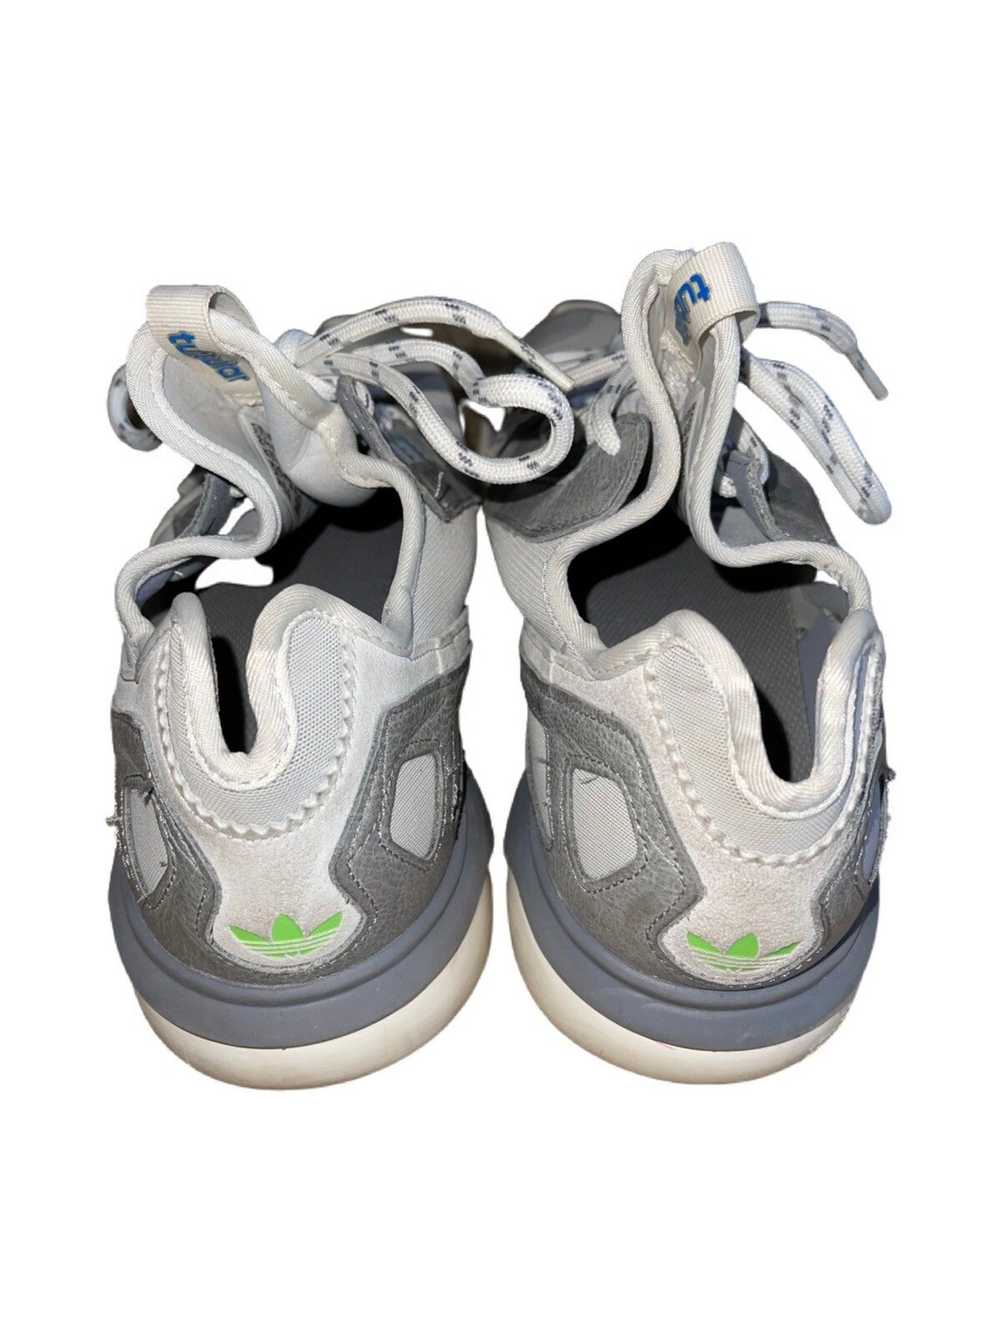 Adidas Adidas Tubular Shoes - image 4